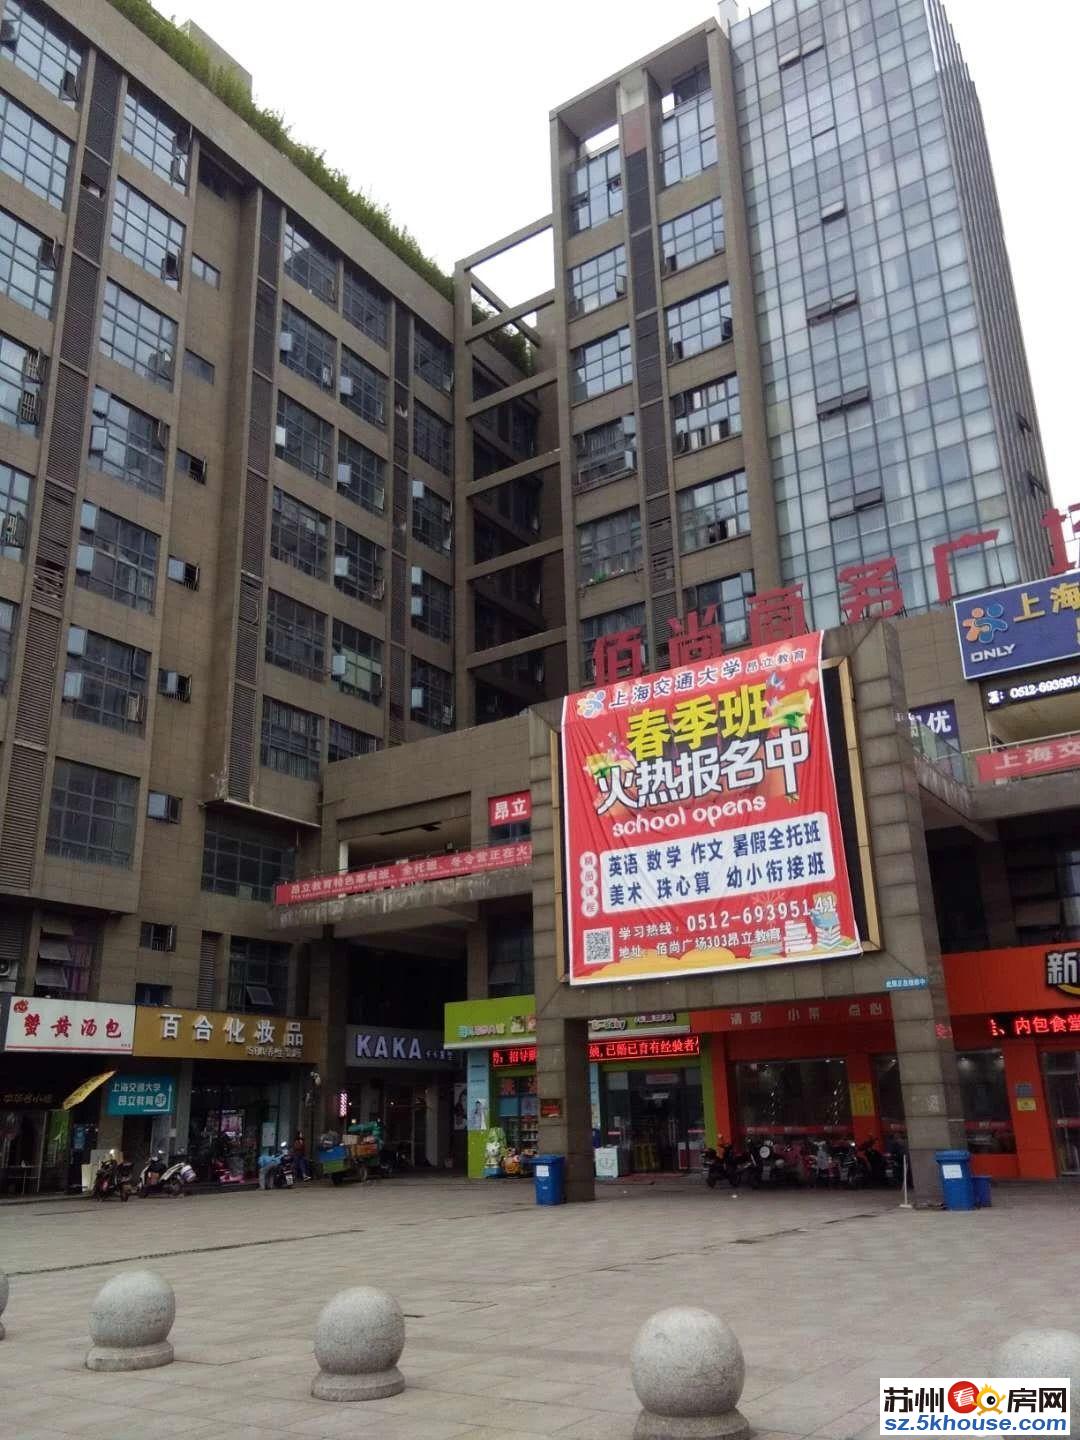 桥常润佰尚广场公寓房出售只要35万